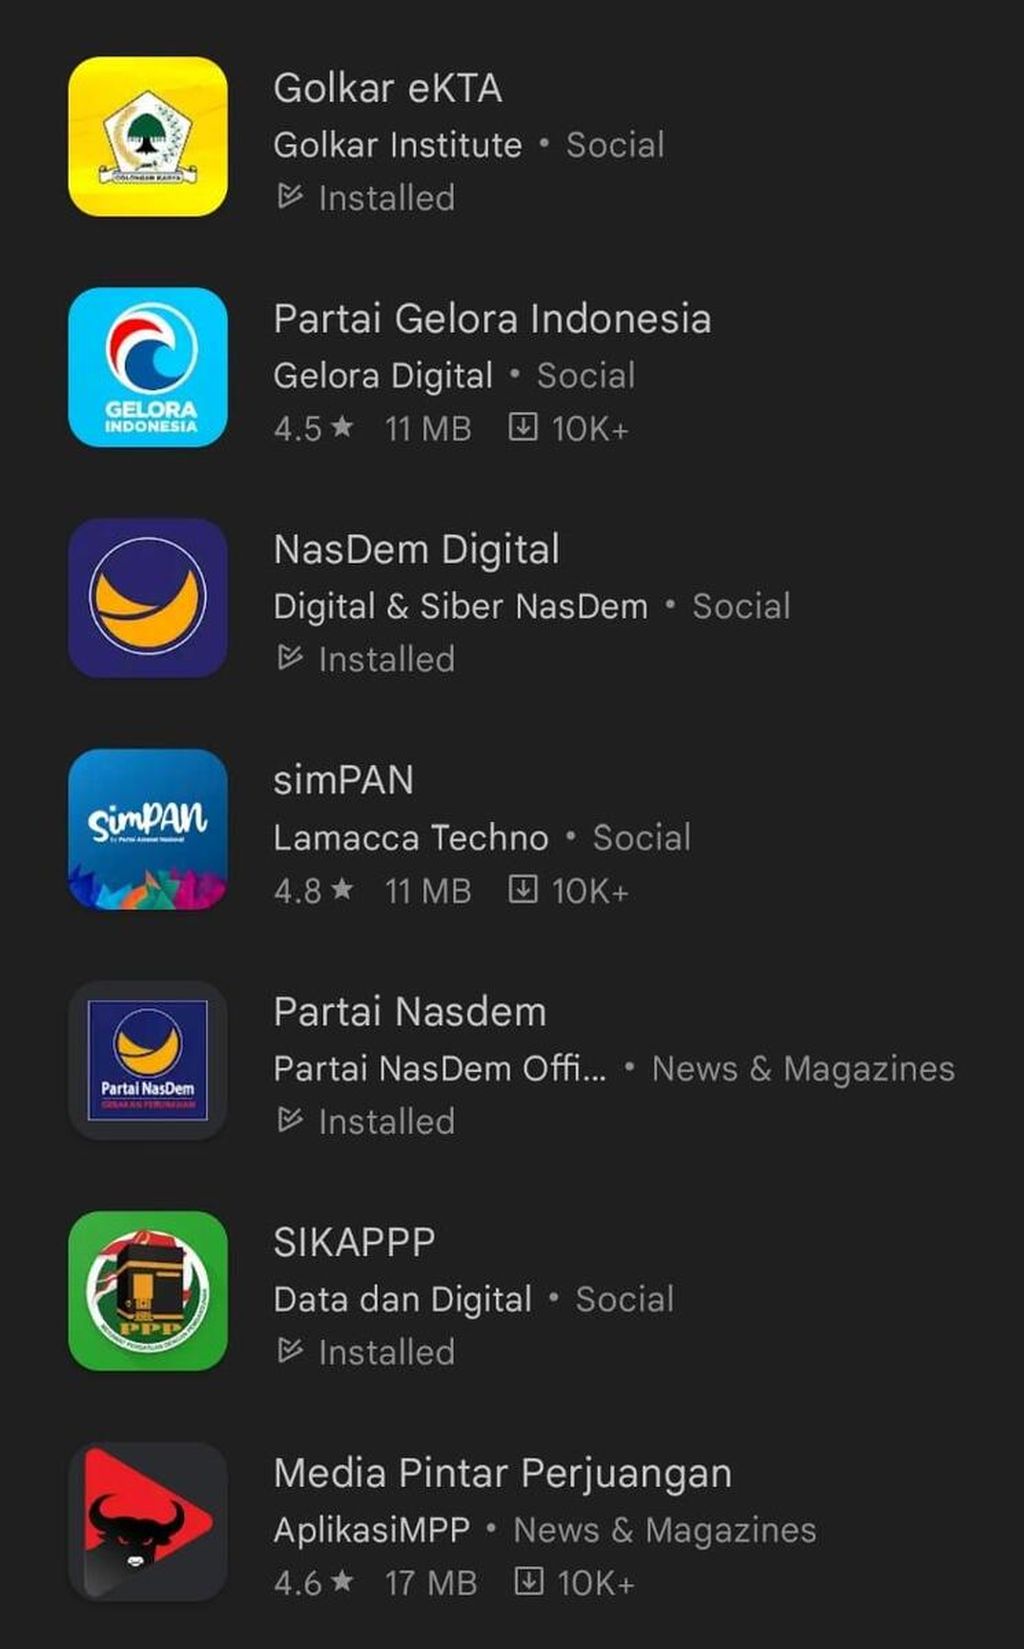 Tangkapan layar sejumlah aplikasi digital partai politik yang bisa diunduh dari platform Google Play Store.